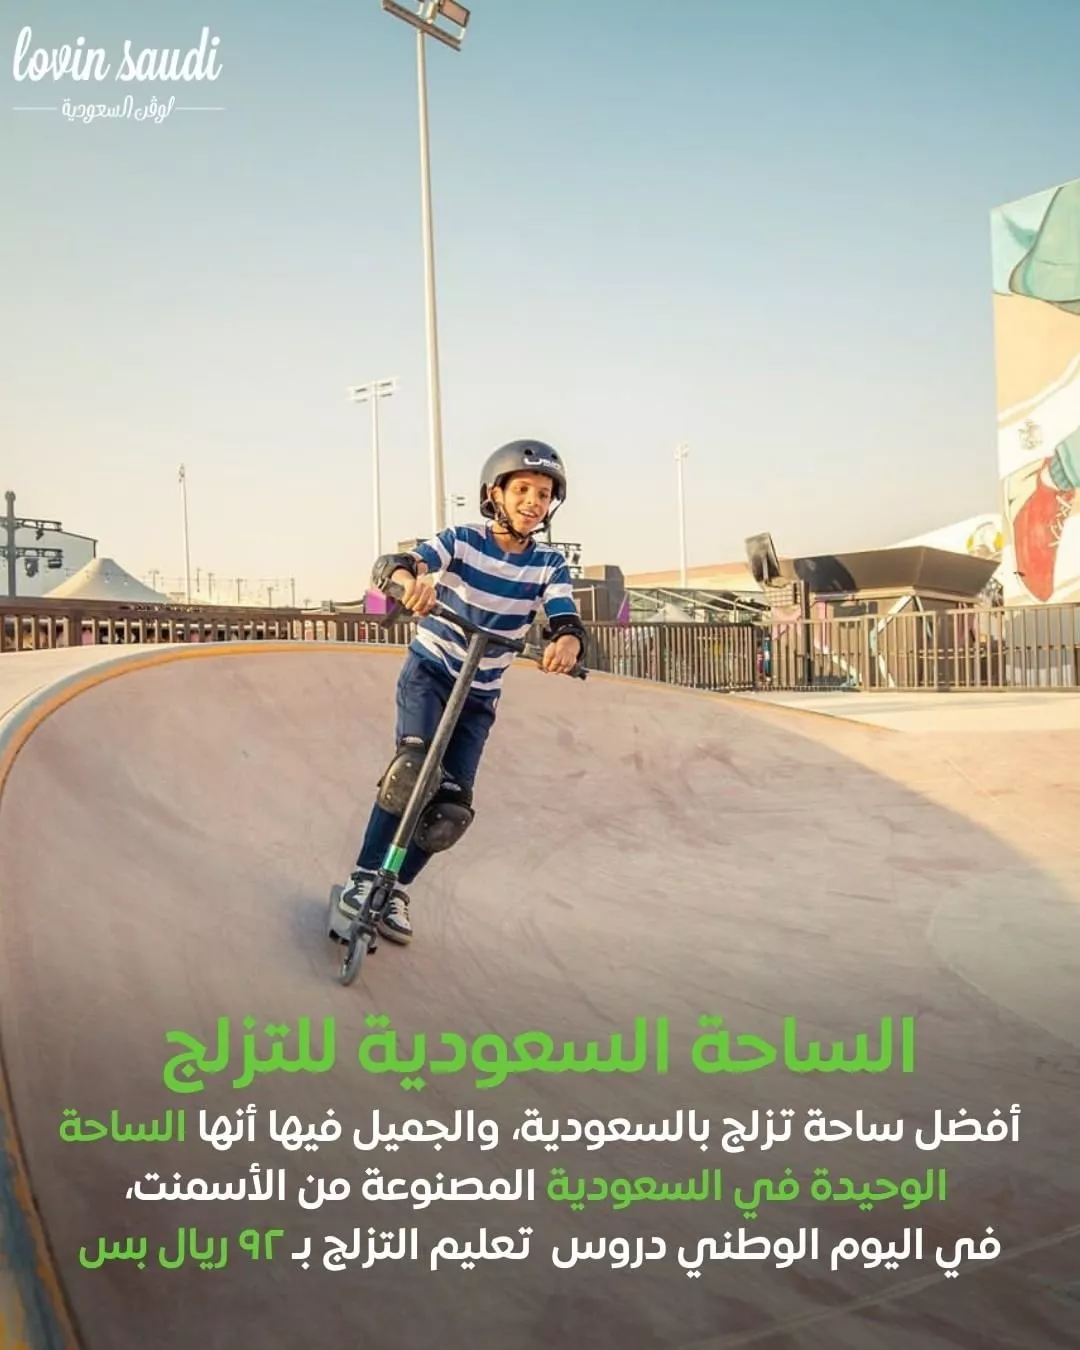 ألعاب نارية، عروض جوية والكثير غيرها بانتظاركِ ضمن فعاليات اليوم الوطني السعودي 92